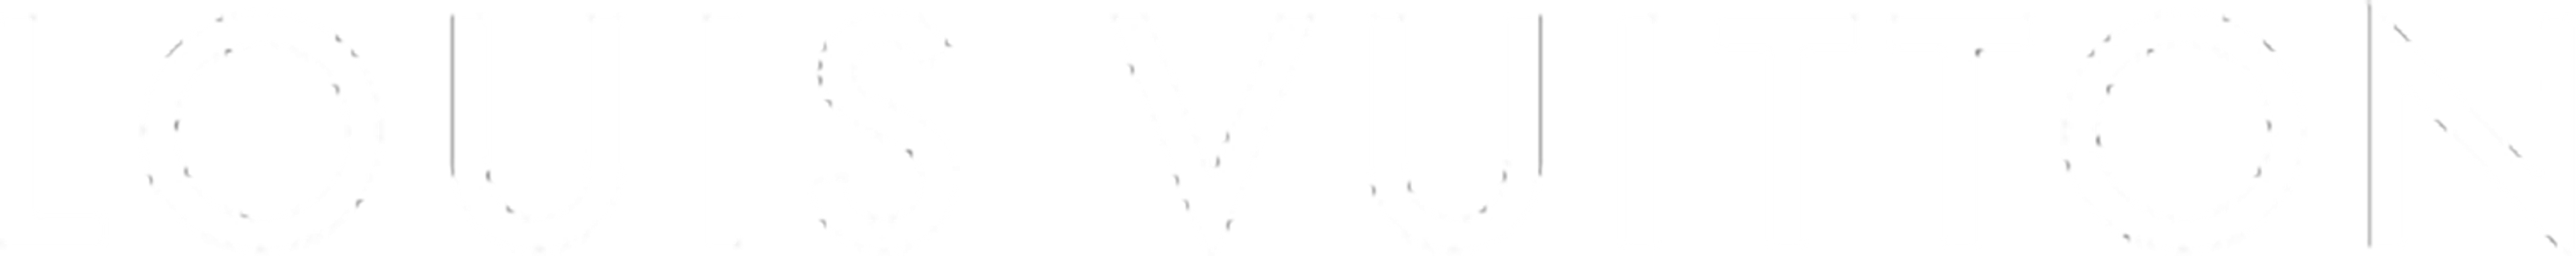 Logo: Louis Vuitton